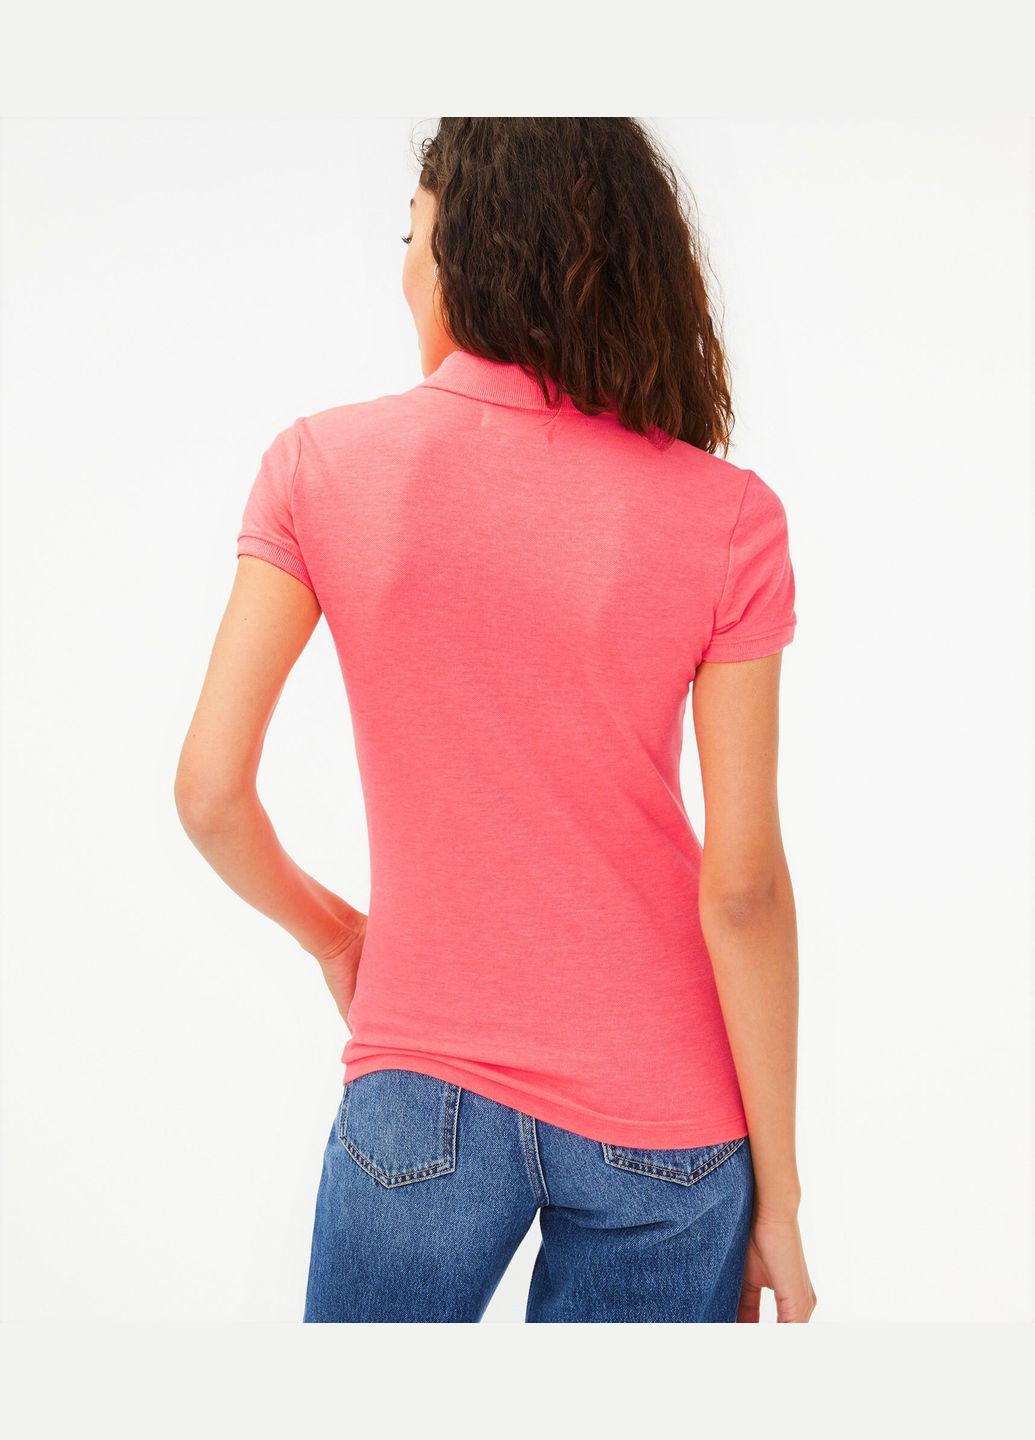 Розовая женская футболка-поло женское - поло a0173w Aeropostale